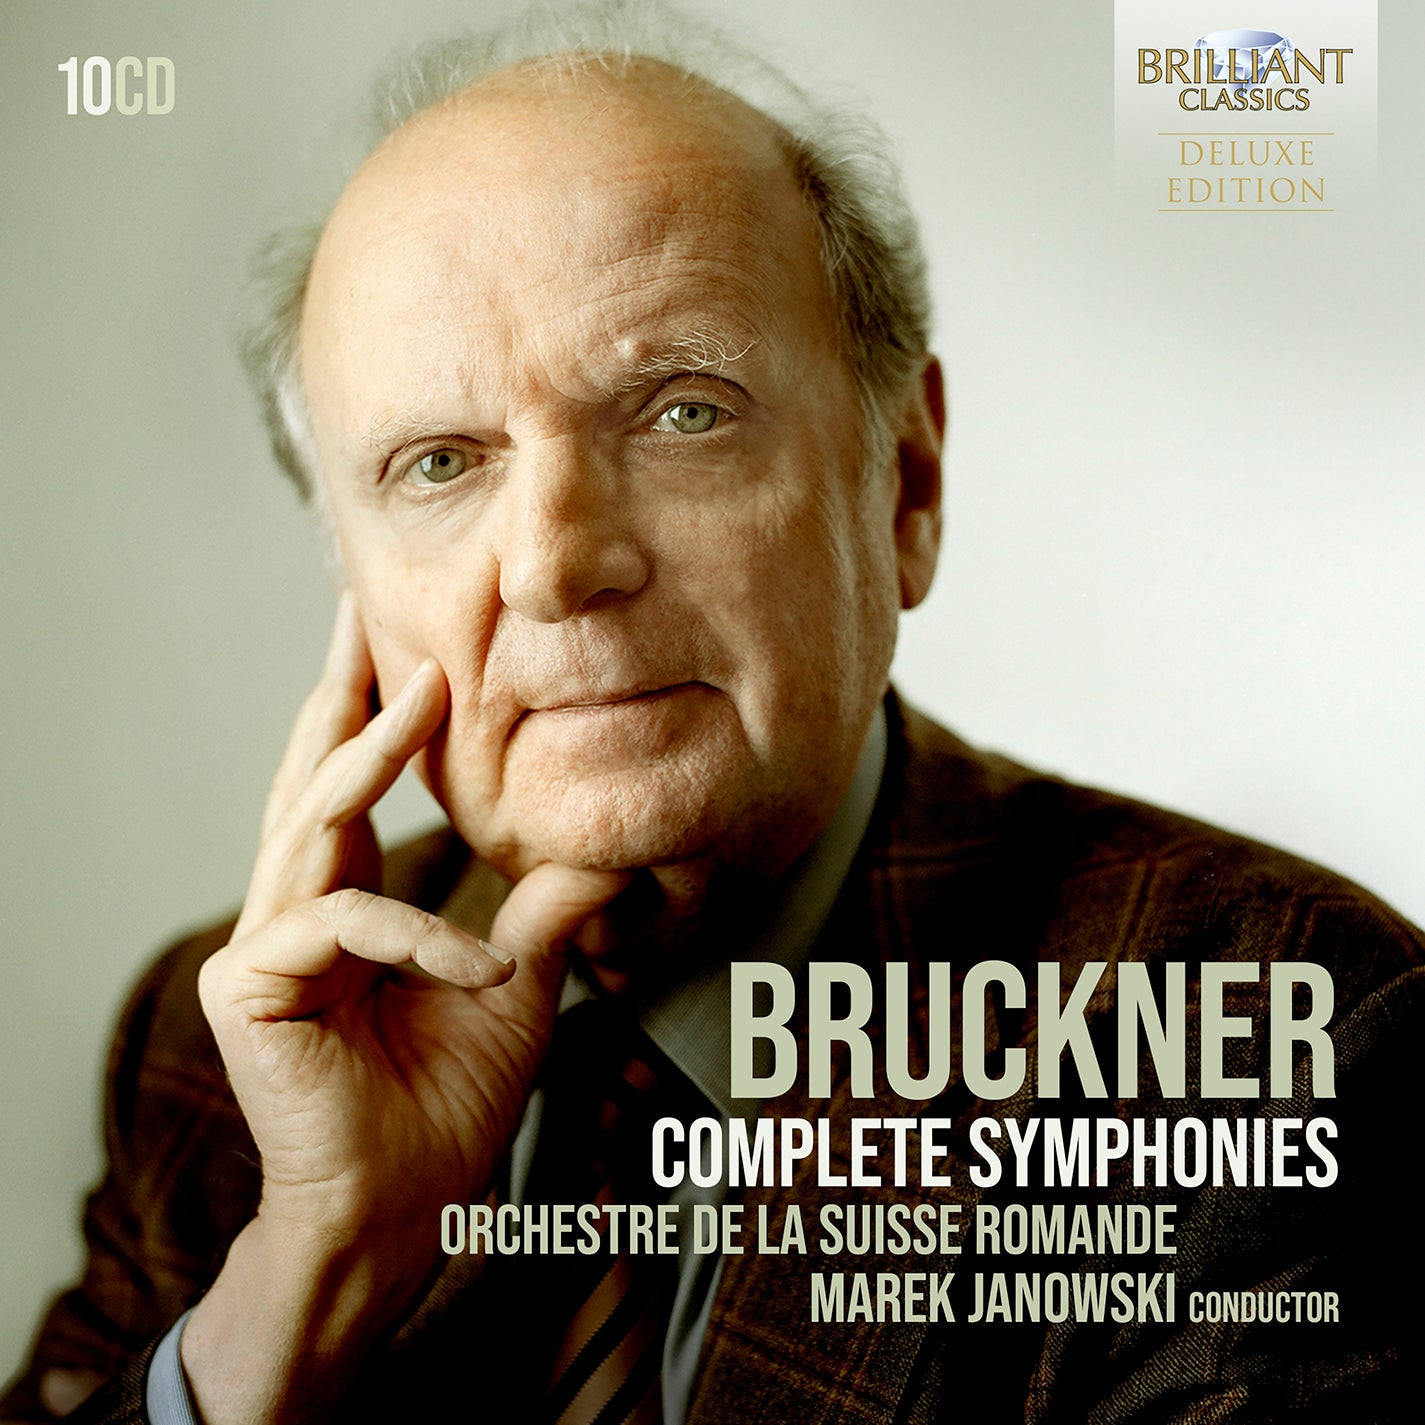 Bruckner: Complete Symphonies / Janowski, Orchestre de La Suisse Romande